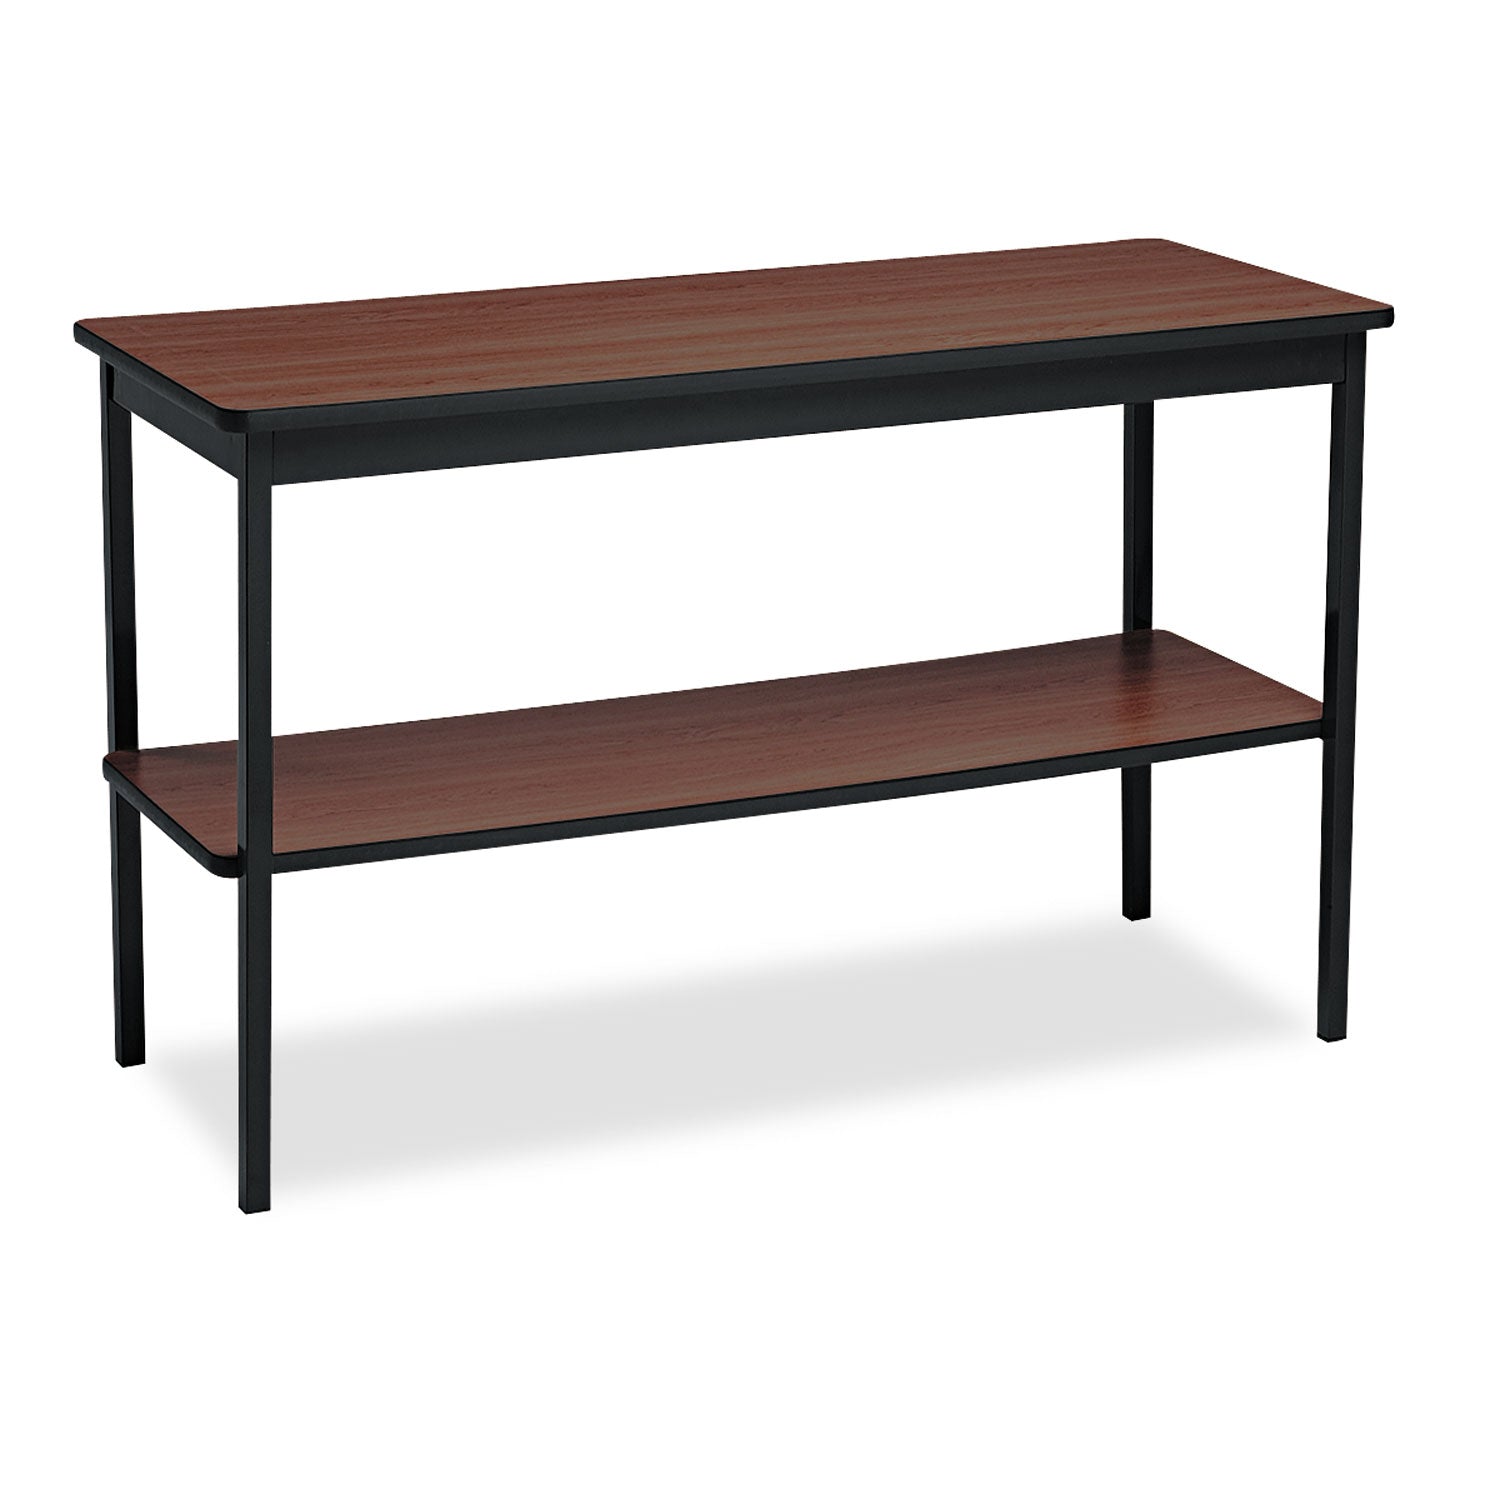 Utility Table with Bottom Shelf, Rectangular, 48w x 18d x 30h, Walnut/Black - 